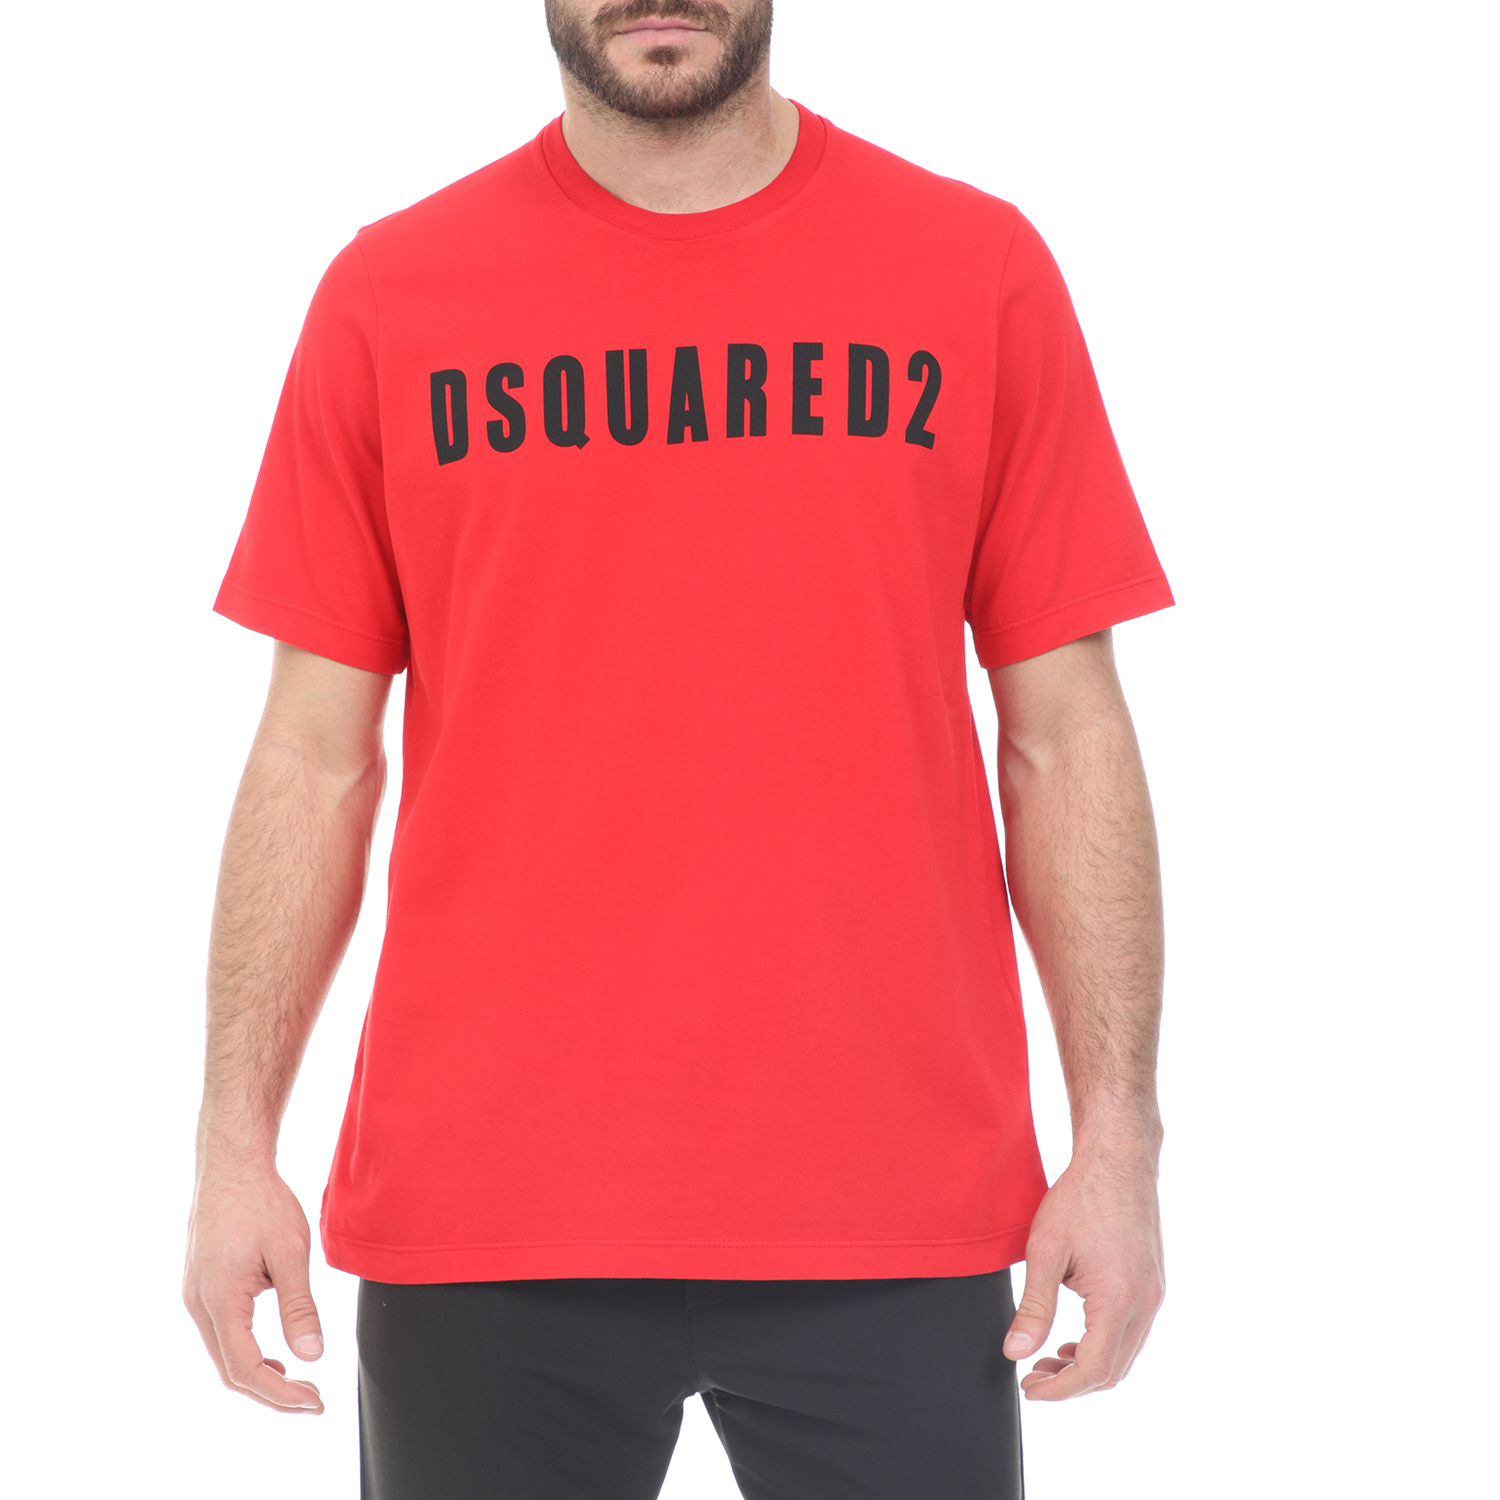 Ανδρικά/Ρούχα/Μπλούζες/Κοντομάνικες Dsquared2 - Ανδρικό t-shirt Dsquared2 κόκκινο